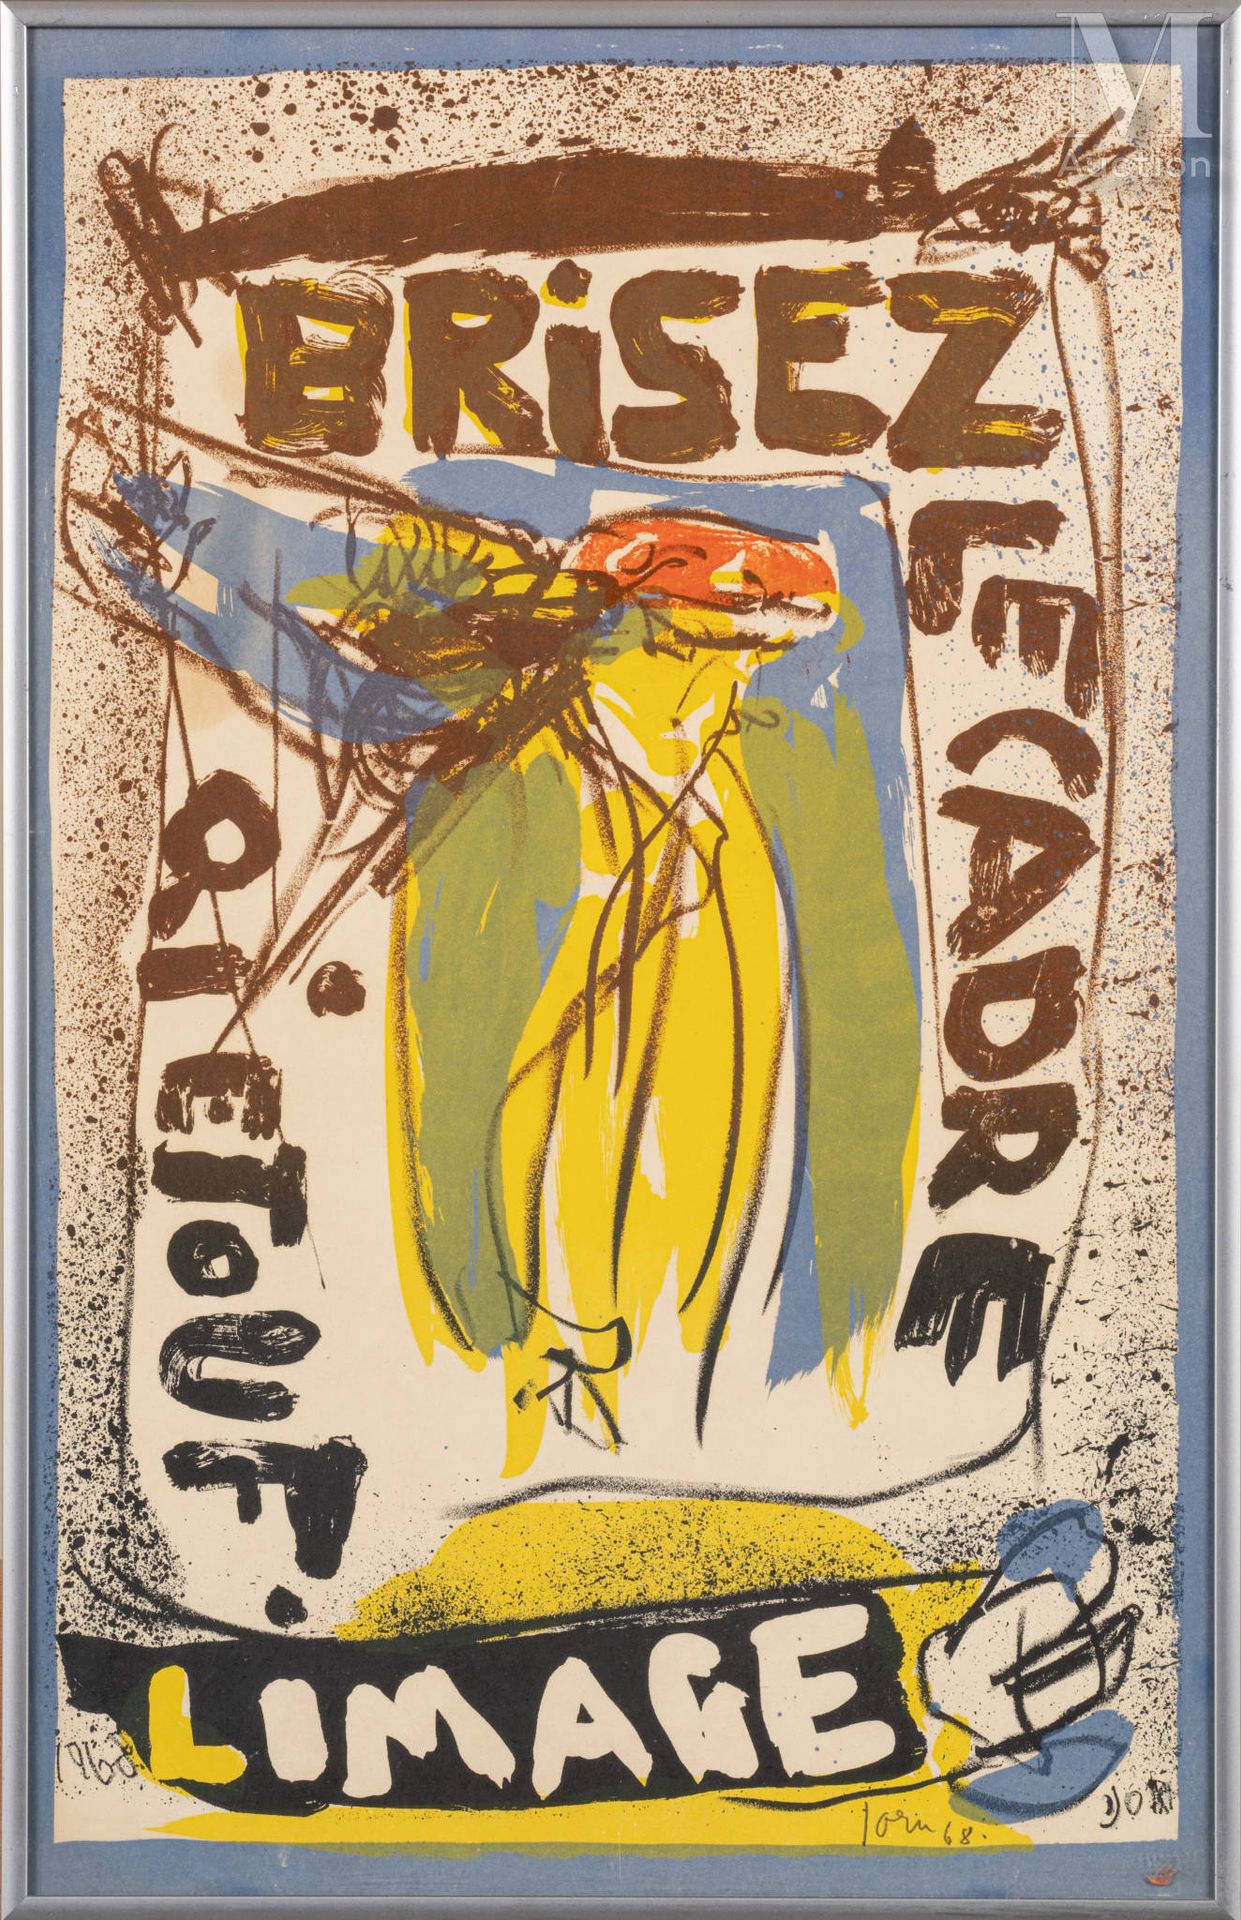 Asger JORN (1914-1973) 石版画（4），1968年

彩色石版画，一套4幅，每幅都有签名和日期

49 x 31 cm (每幅画)